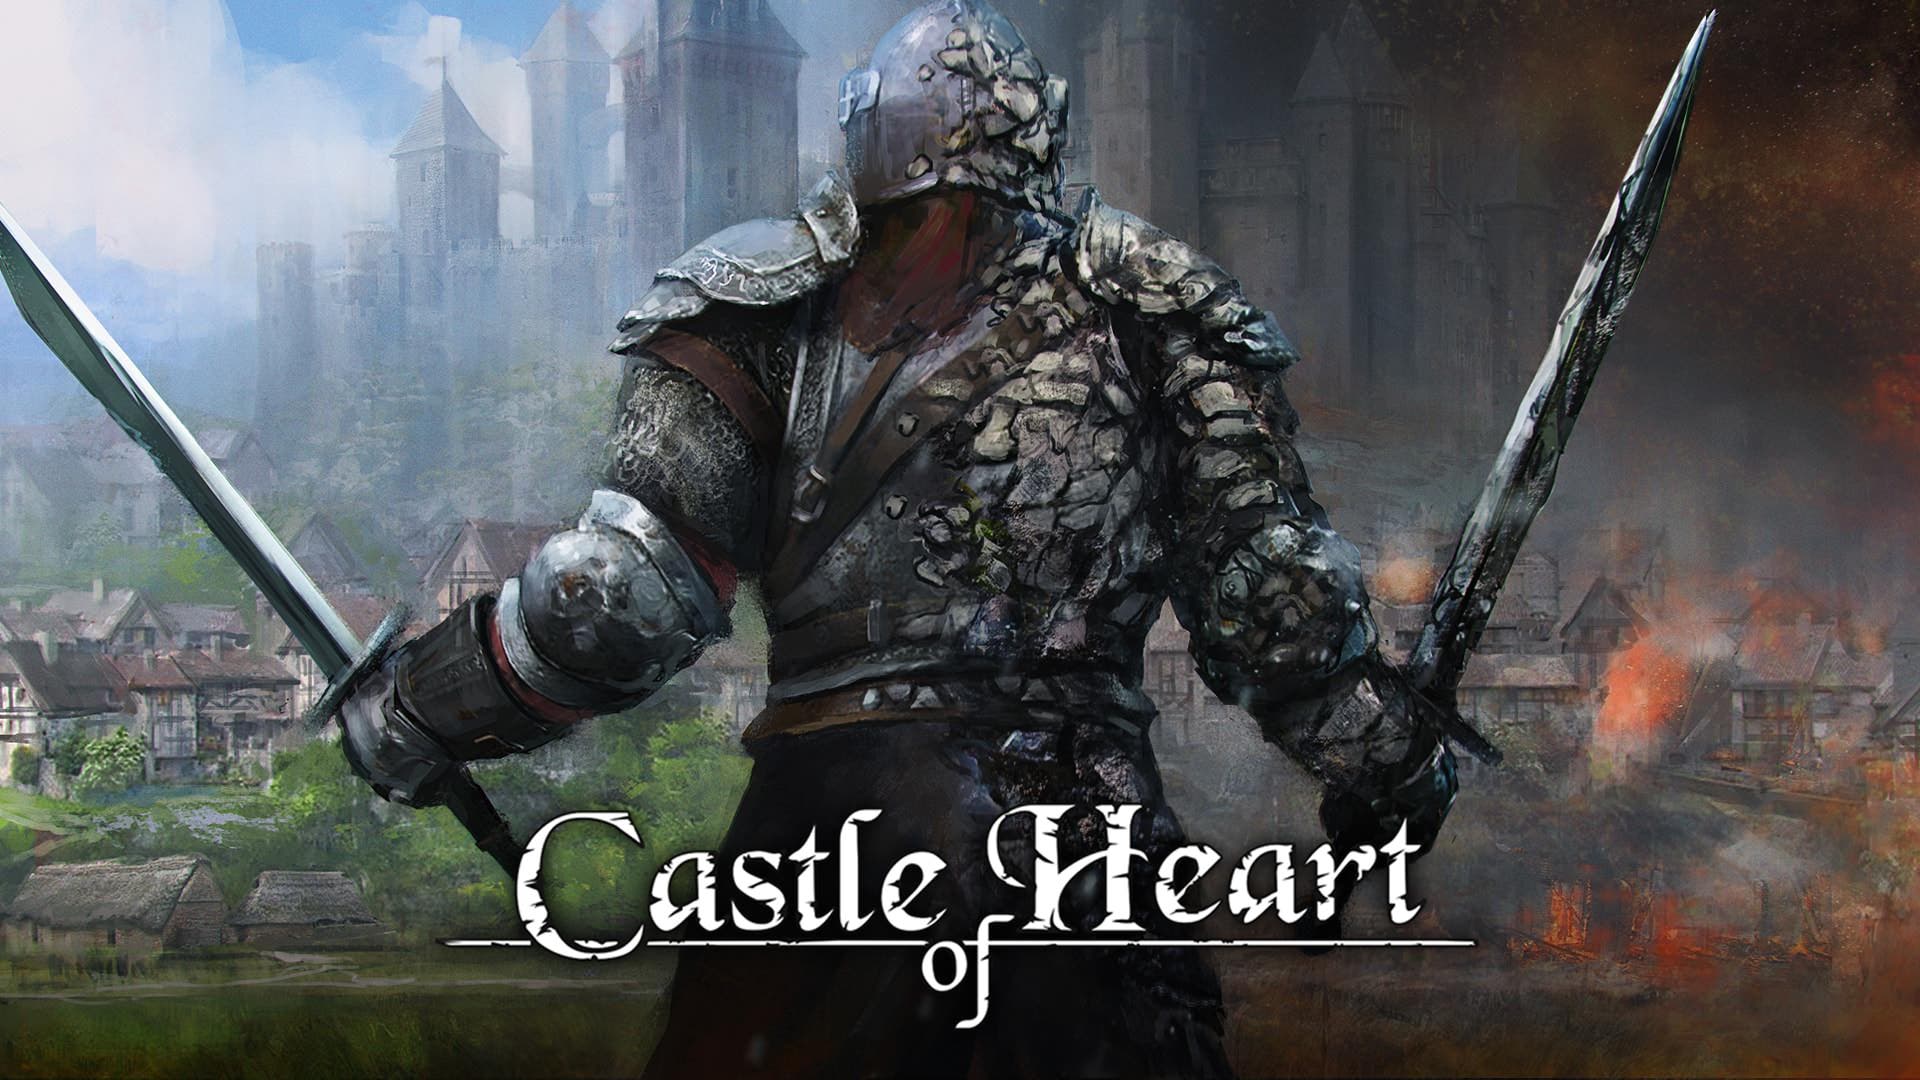 [Act.] La desarrolladora de Castle of Heart explica por qué el juego es exclusivo de Switch, nuevo gameplay